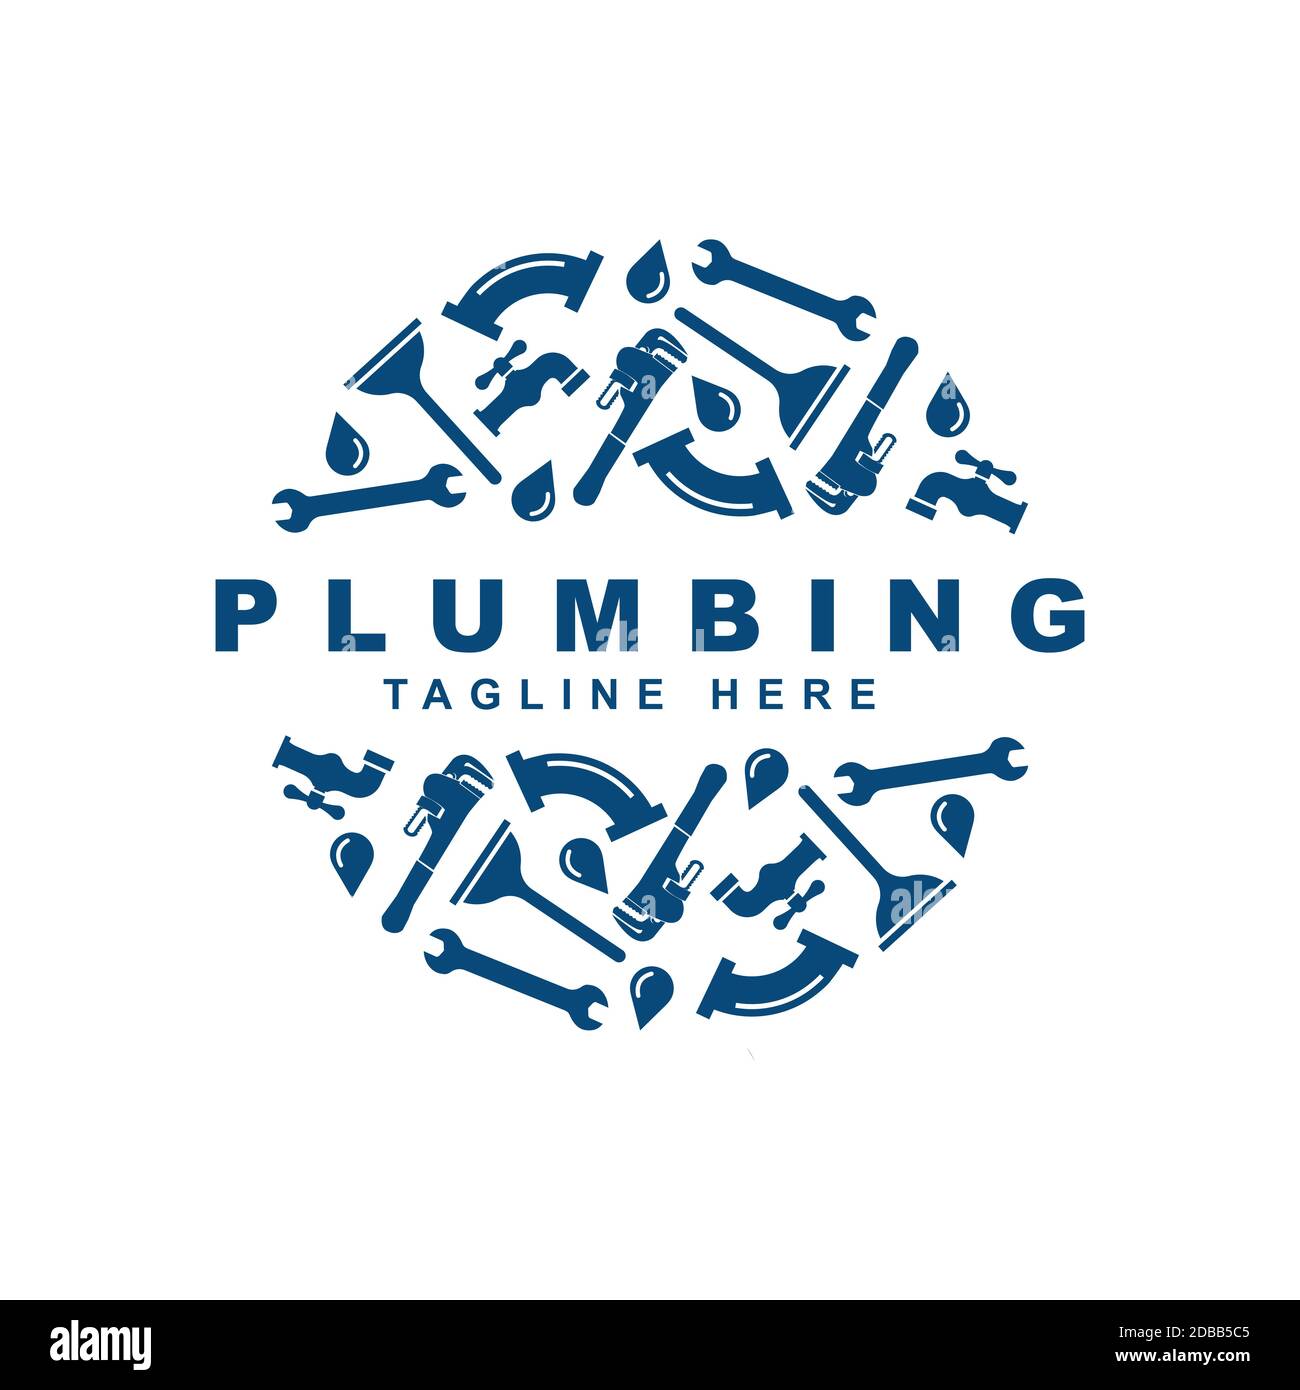 Plumbing icon set logo design vector template. Stock Vector